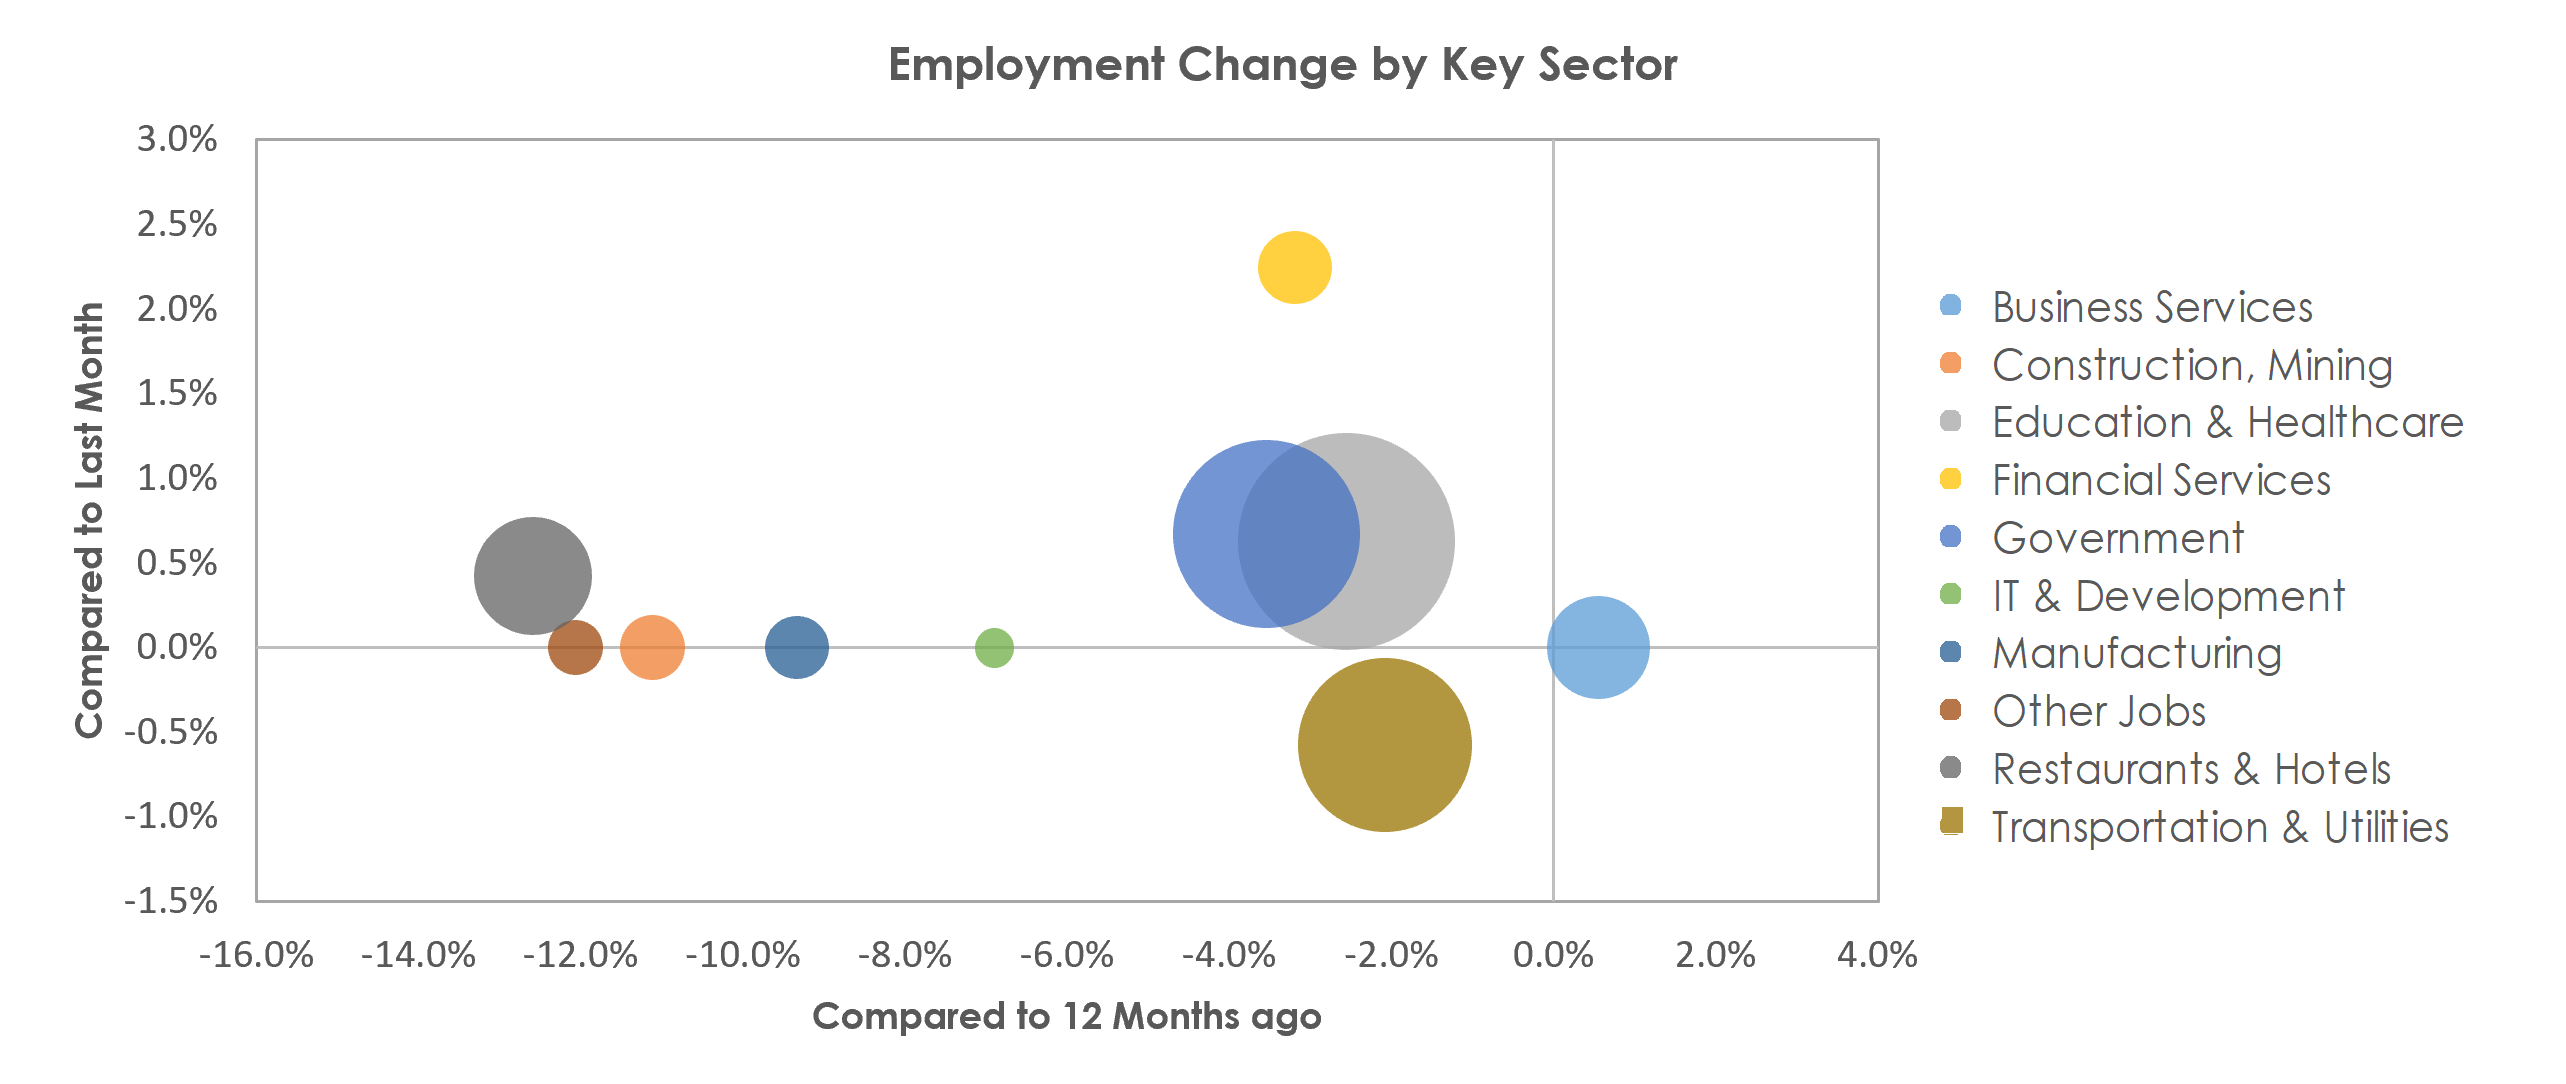 McAllen-Edinburg-Mission, TX Unemployment by Industry February 2021